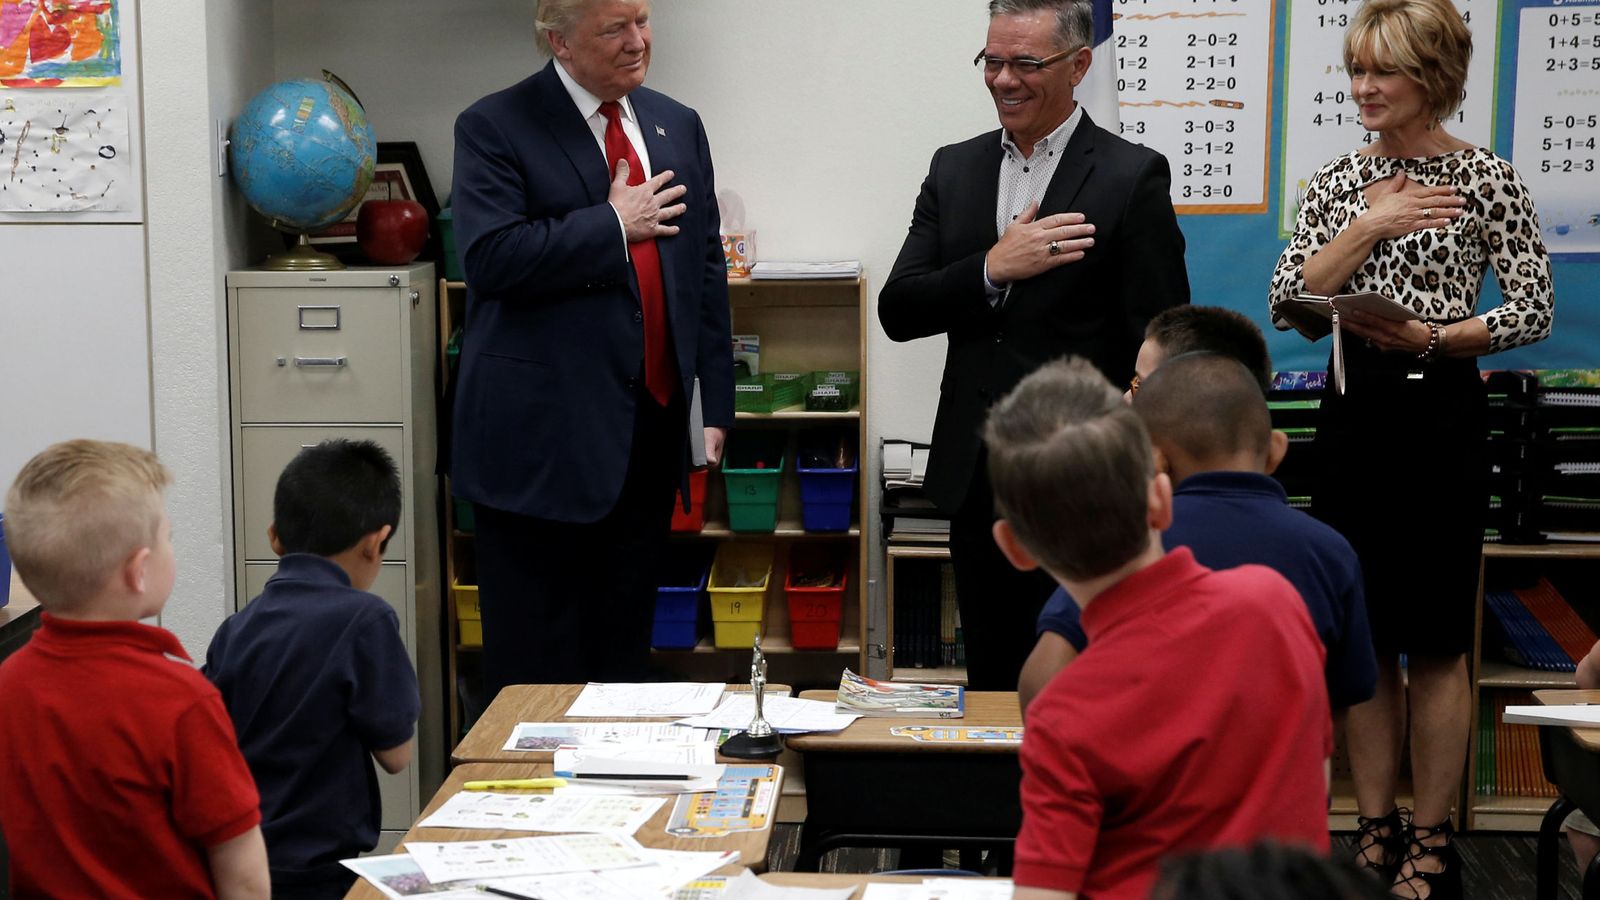 Foto: Visita de Donald Trump a una escuela en Las Vegas durante la campaña. (Reuters)